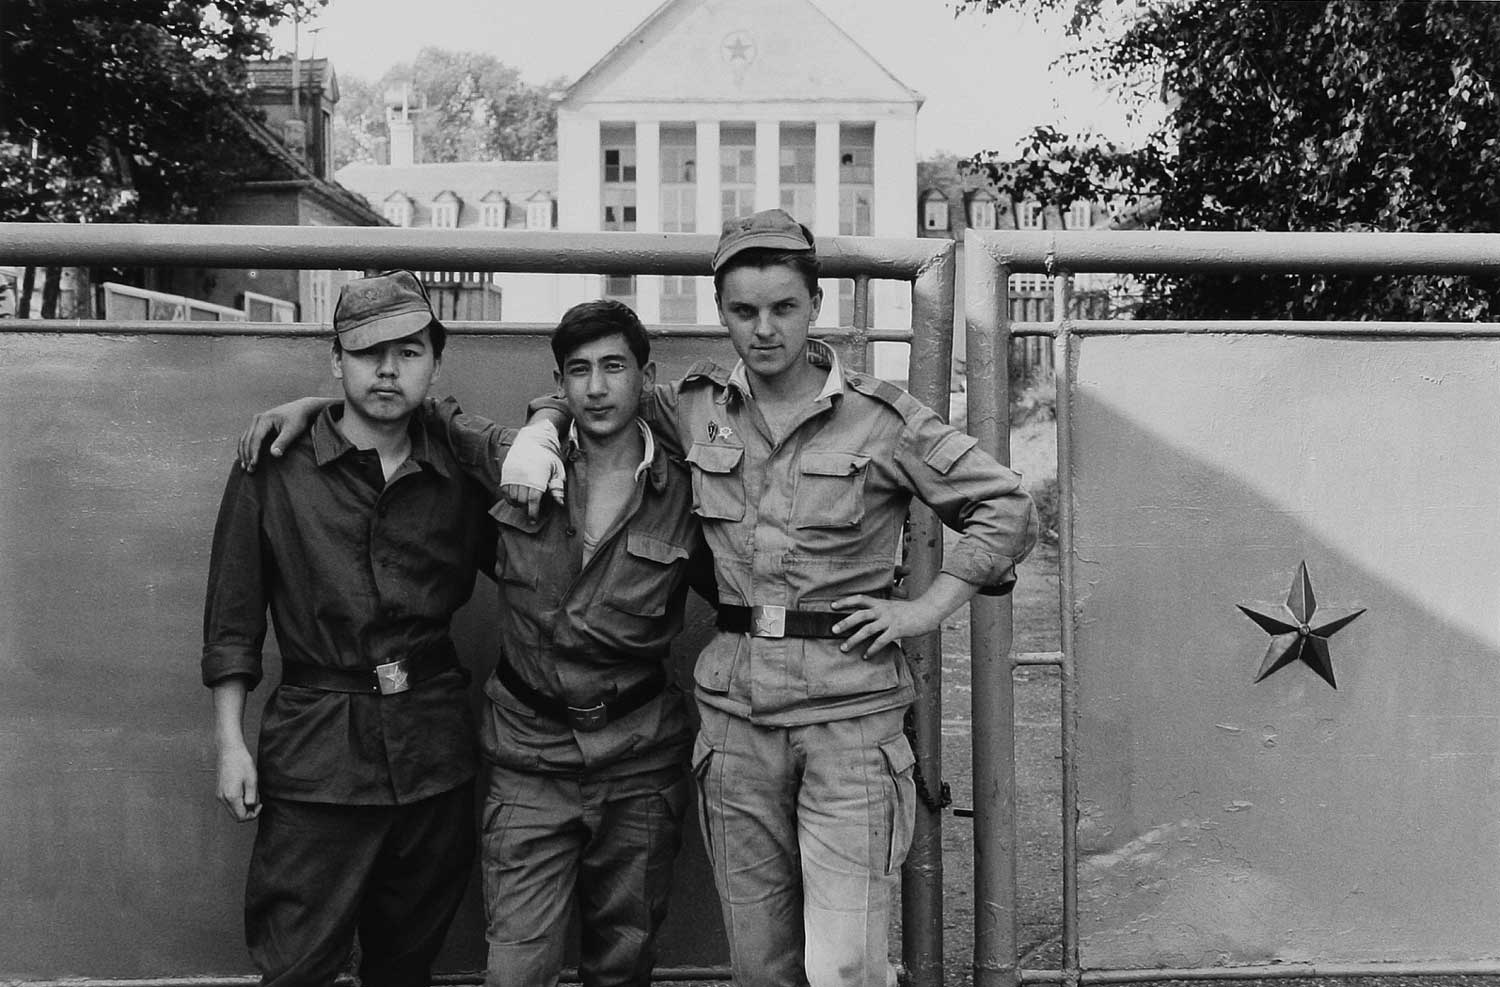 Foto, schwarz-weiß: Drei Soldaten in unterschiedlichen Uniformen vor dem geschlossenen Kasernentor aus Metall.